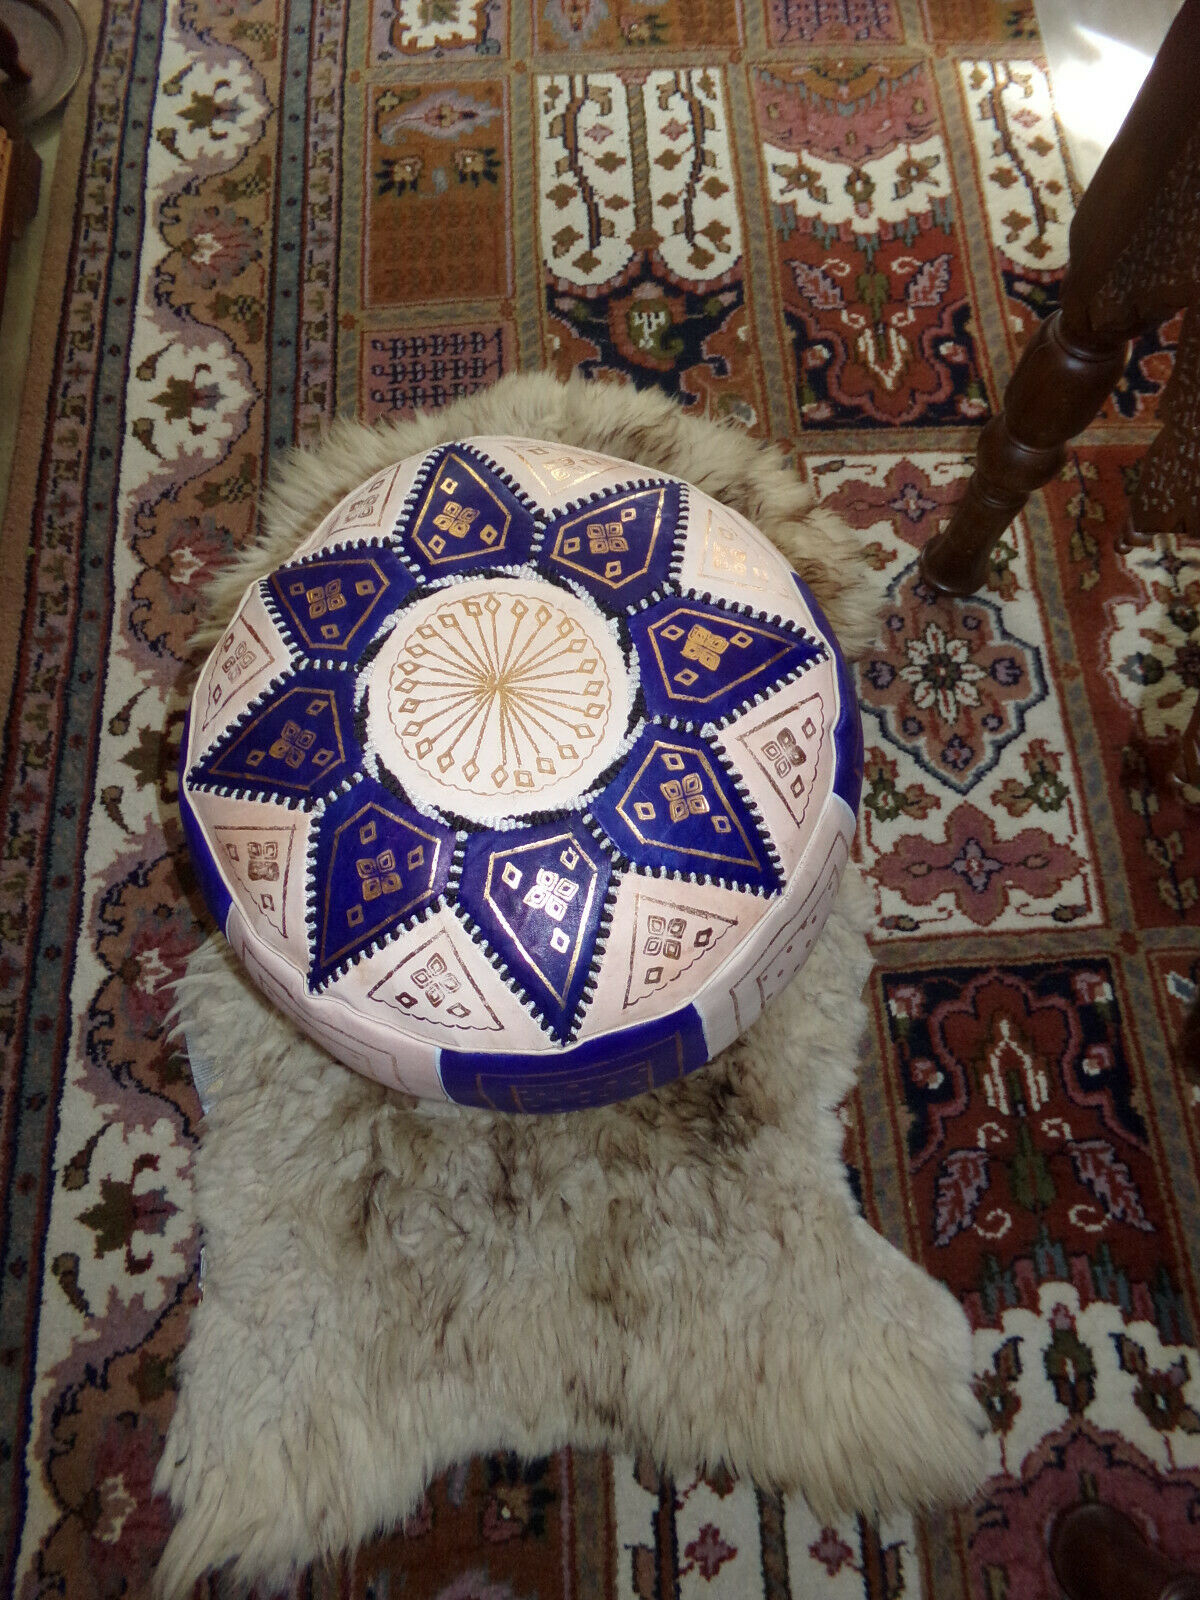 Marokkanische Orientalische Sitzkissen aus echtem Leder inkl. Füllung